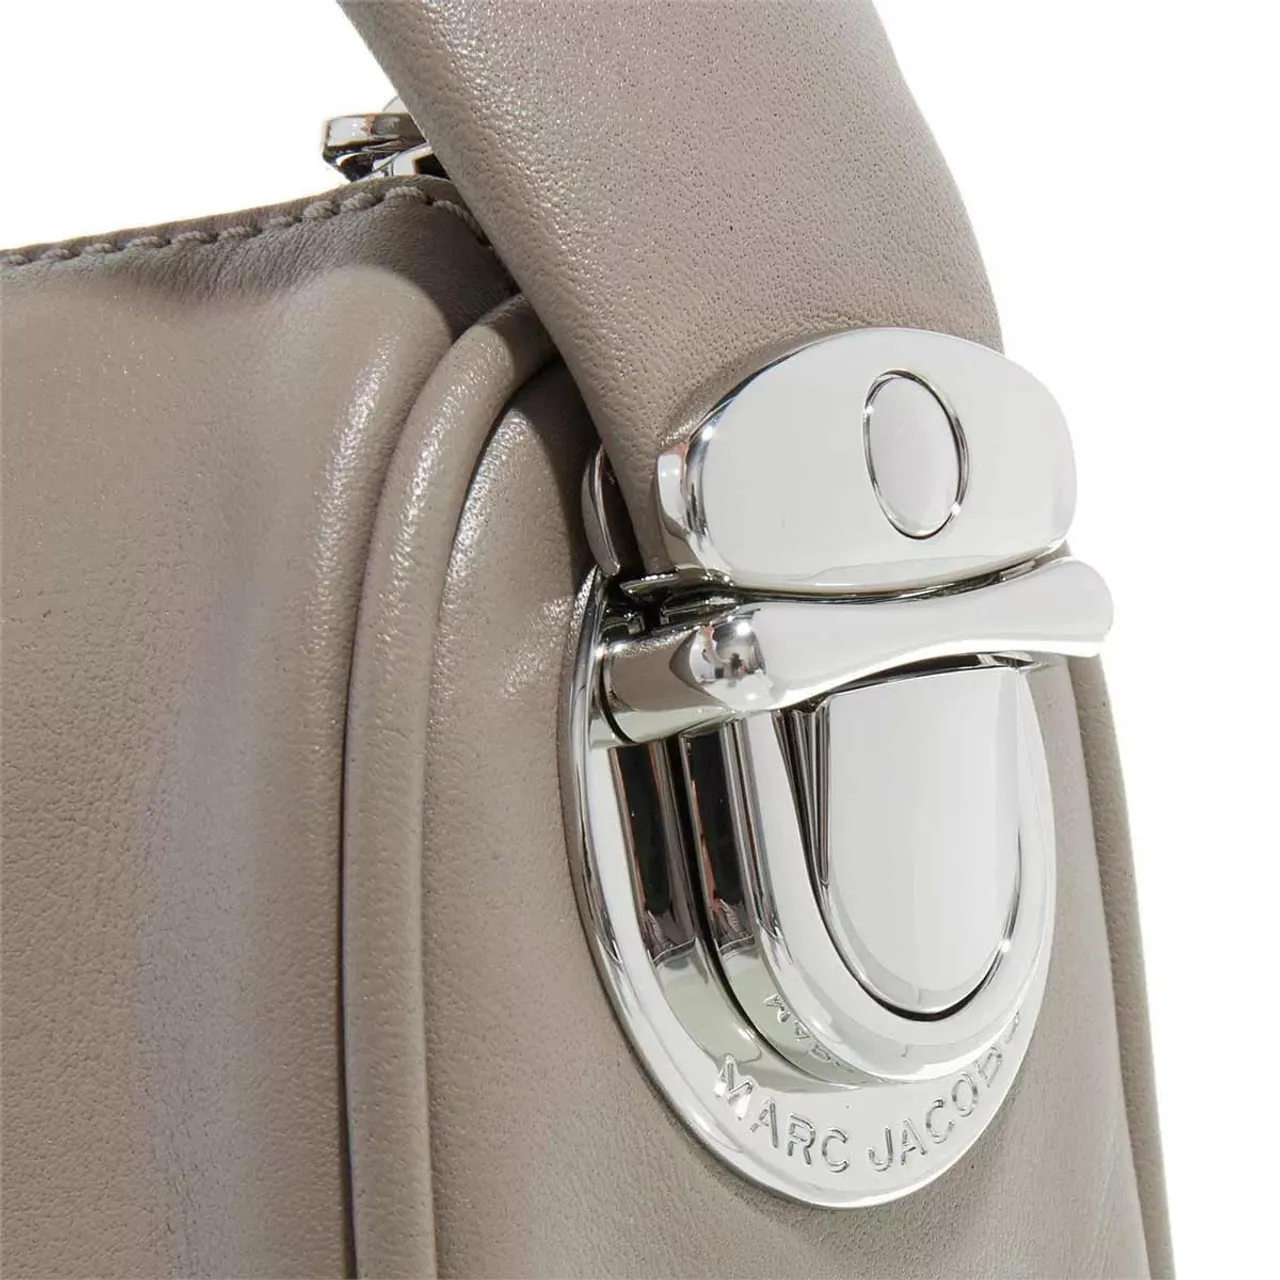 Marc Jacobs Hobo Bags - The Pushlock Mini Hobo Bag - beige - Hobo Bags for ladies